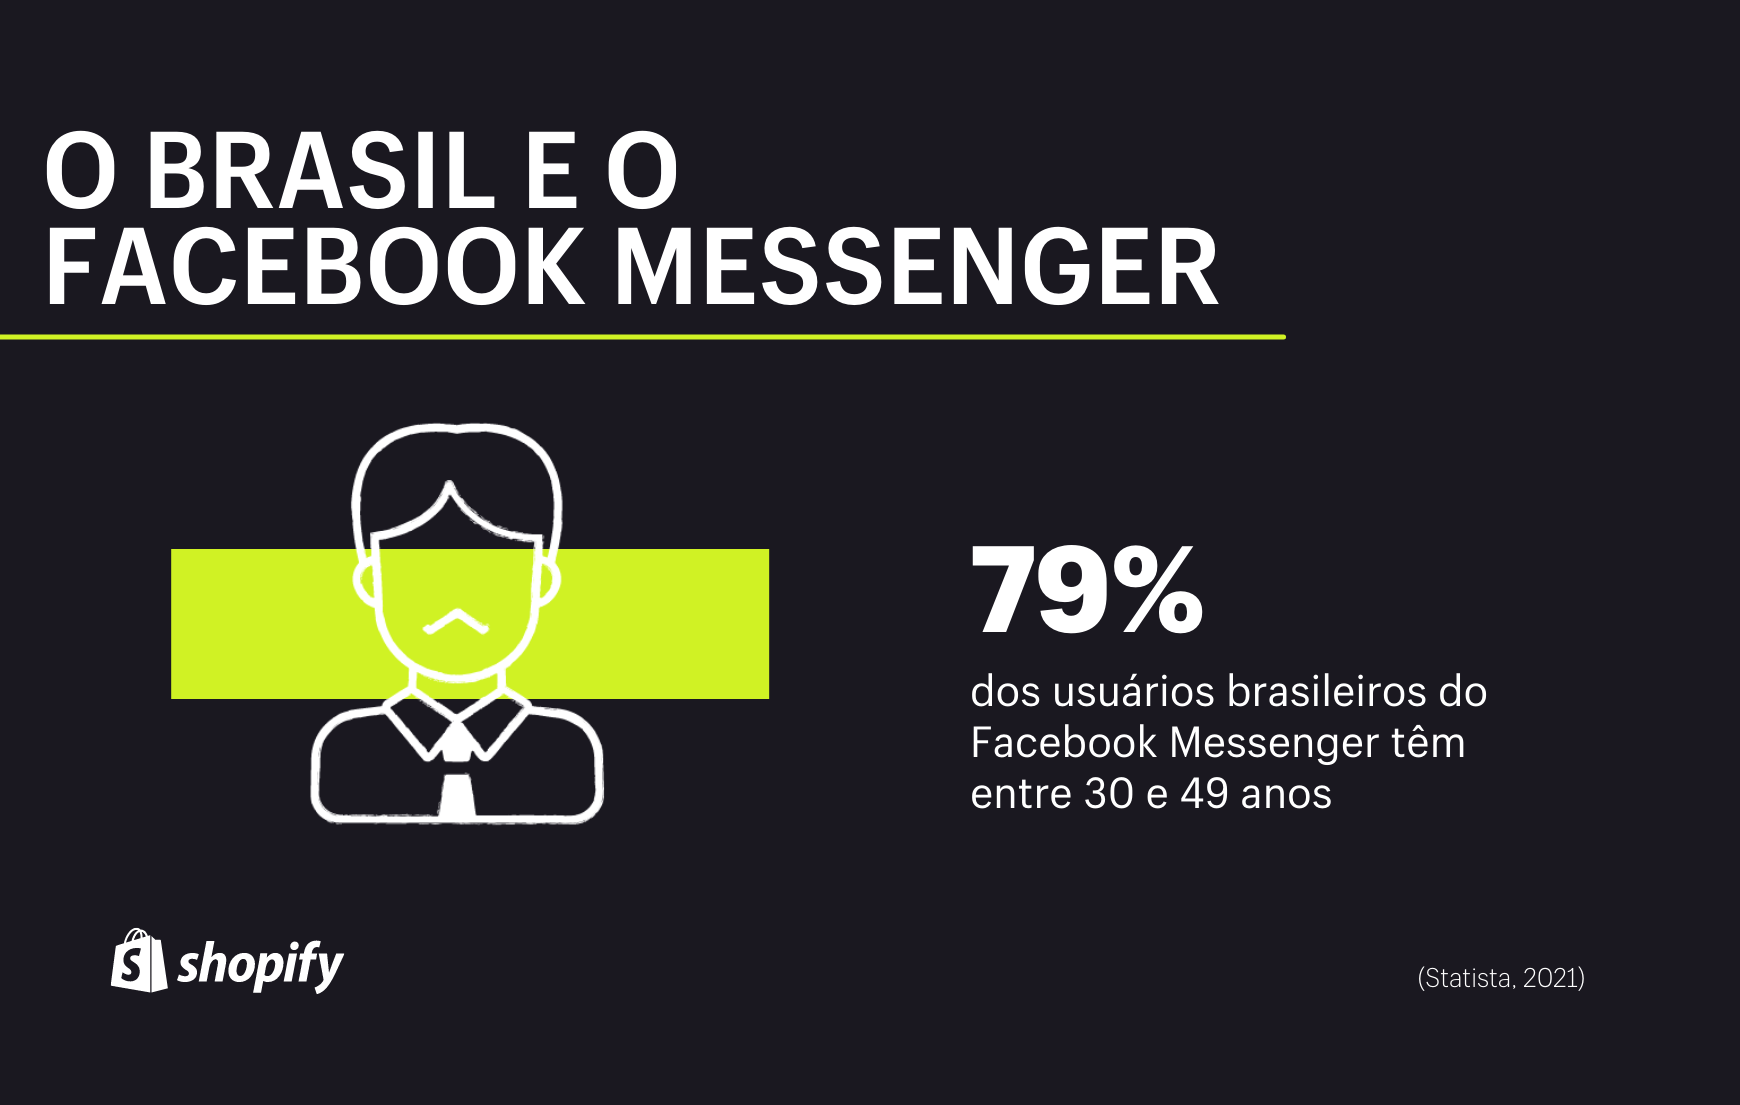 Um infográfico com plano de fundo preto. Em letras brancas e detalhes em verde, lê-se a informação de que a idade média dos usuários do Facebook Messenger é de 30 a 49 anos